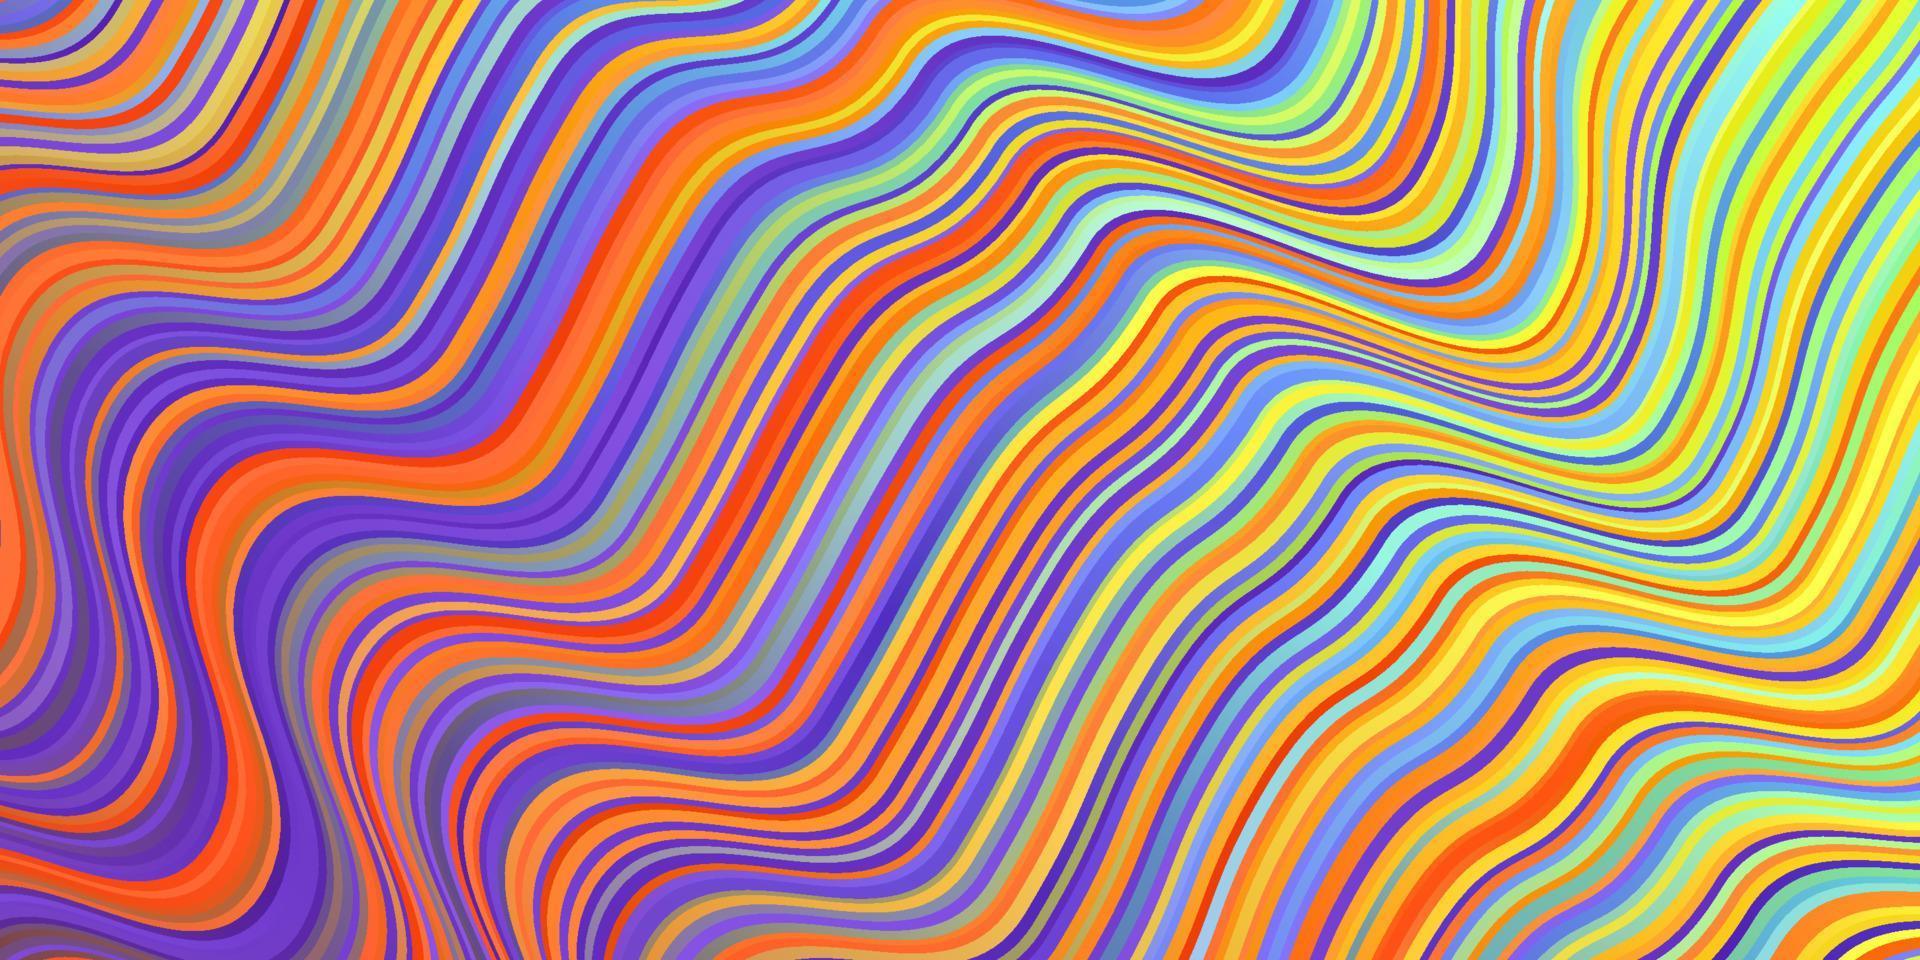 luz padrão multicolorido de vetor com linhas.